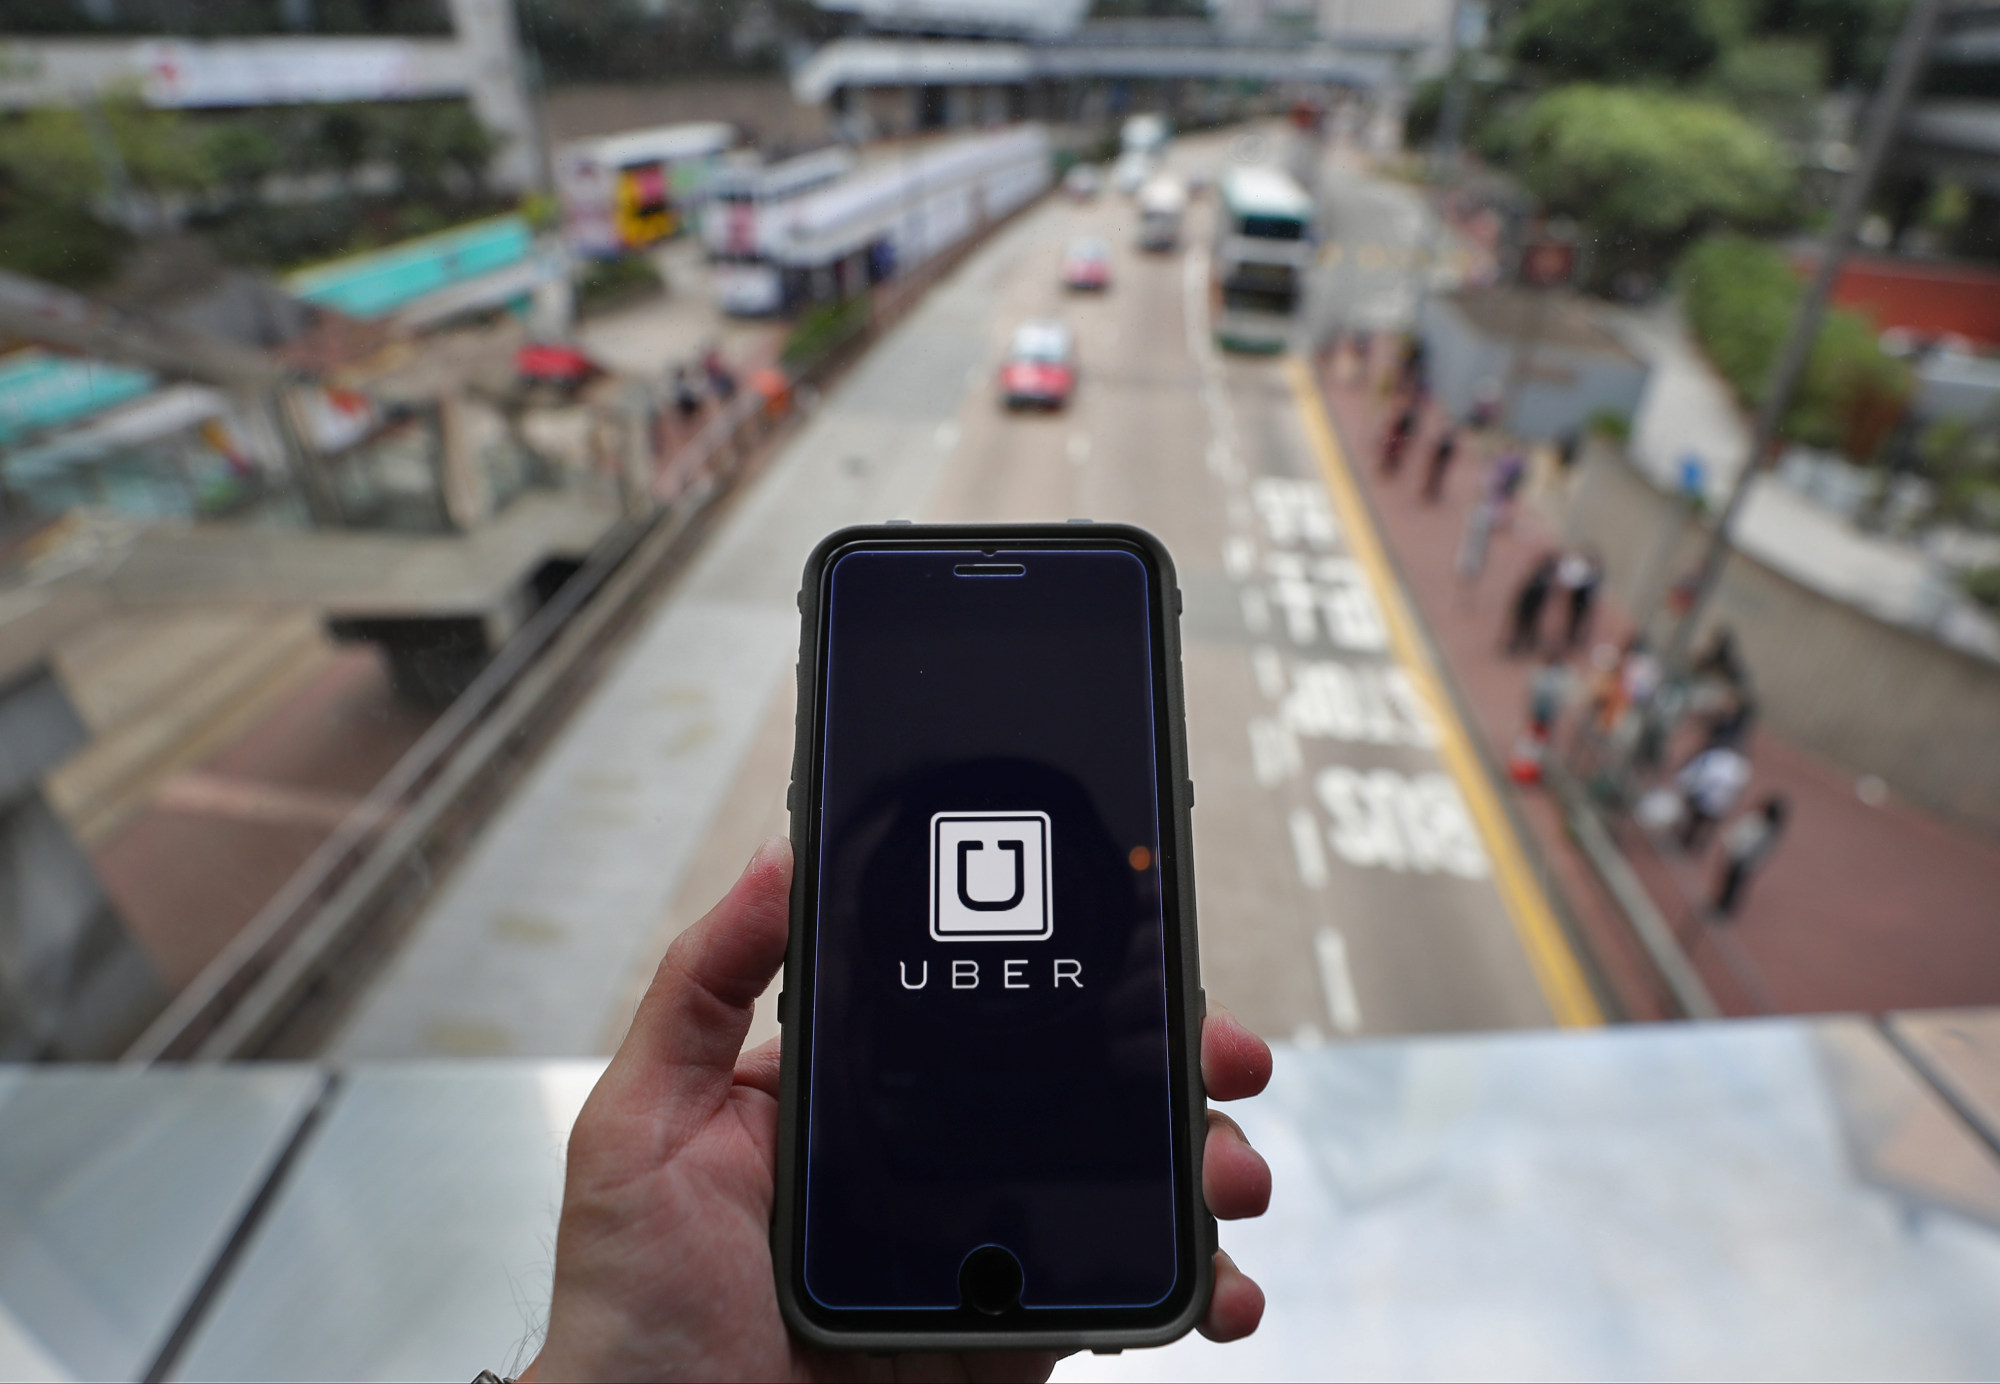 Los taxistas y operadores de Hong Kong se están reuniendo para exigir a las autoridades que intensifiquen las acciones contra los servicios de transporte ilegales como Uber.